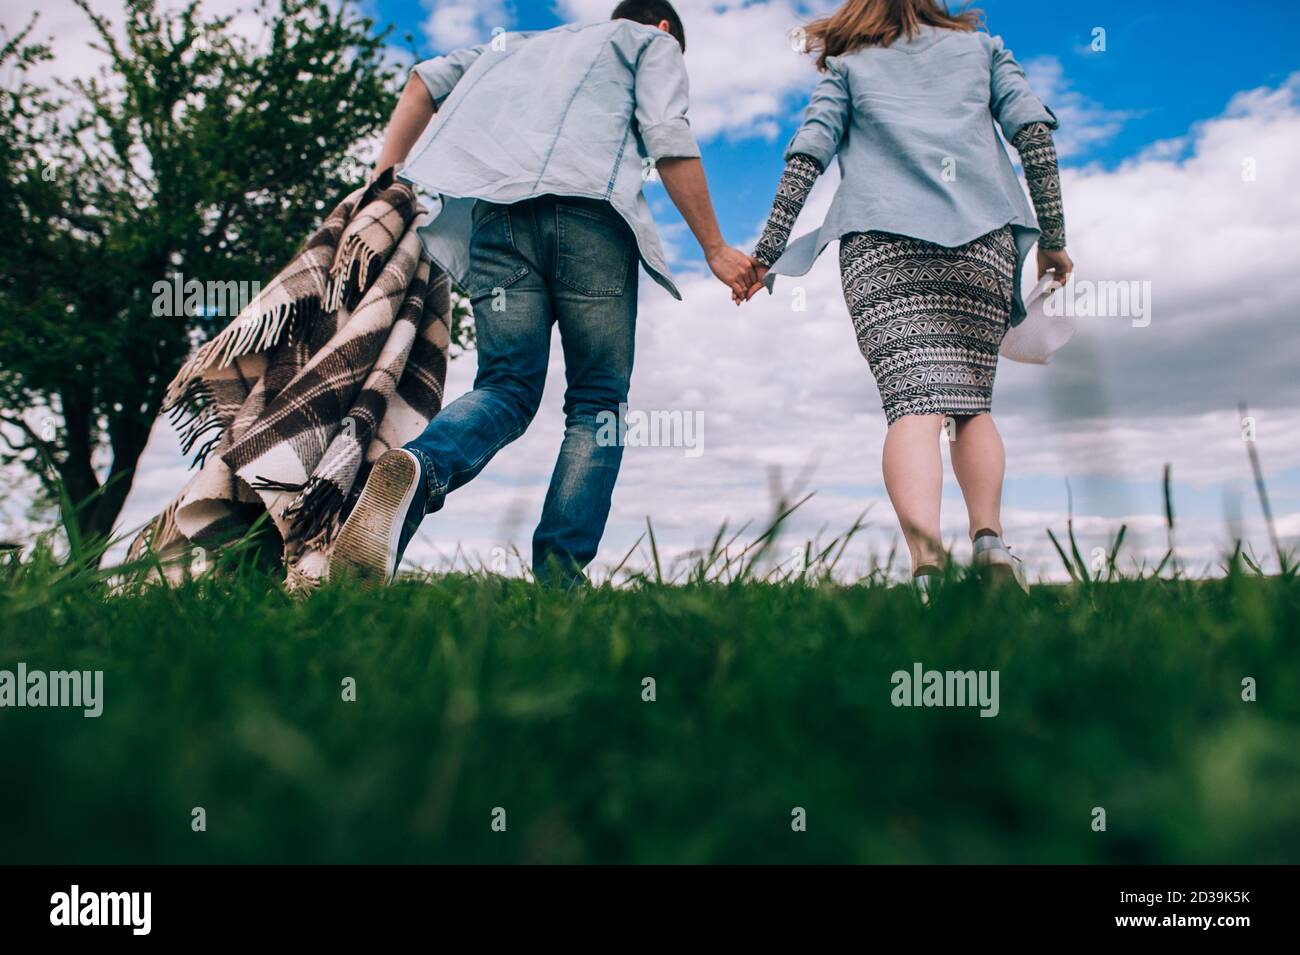 Junges Paar in der Liebe mit einem karierten karierten kariert läuft über ein grünes Feld halten Hände auf einem Hintergrund von blauem Himmel. Rückansicht und Unteransicht. Getöntes Bild Stockfoto